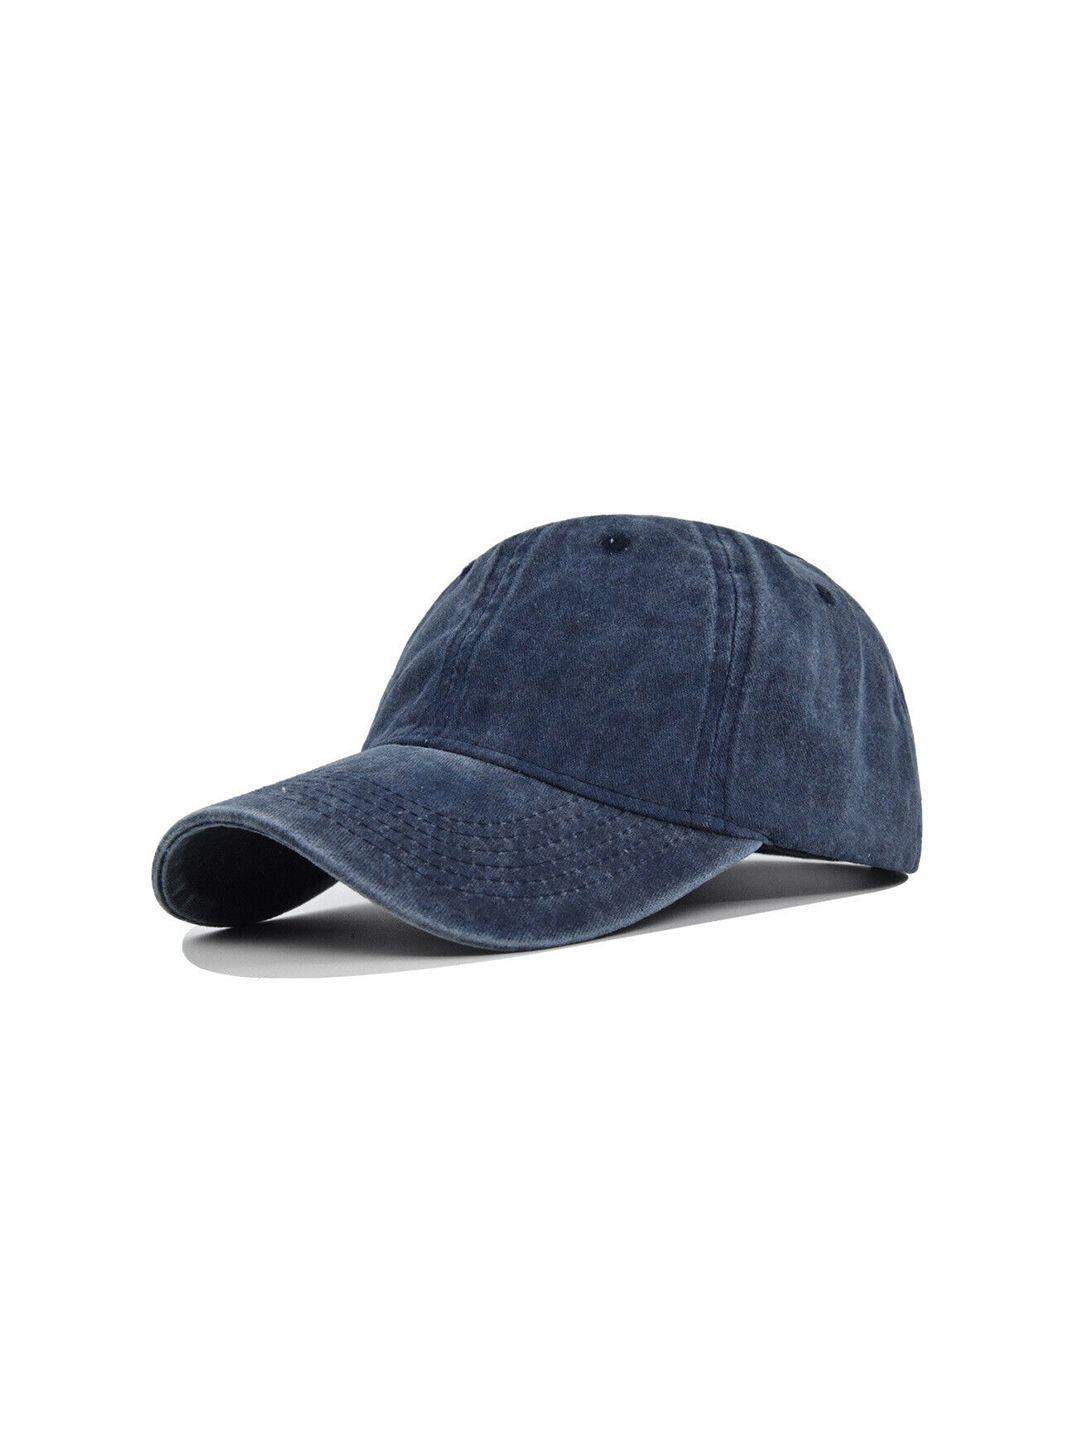 alexvyan men blue baseball cap